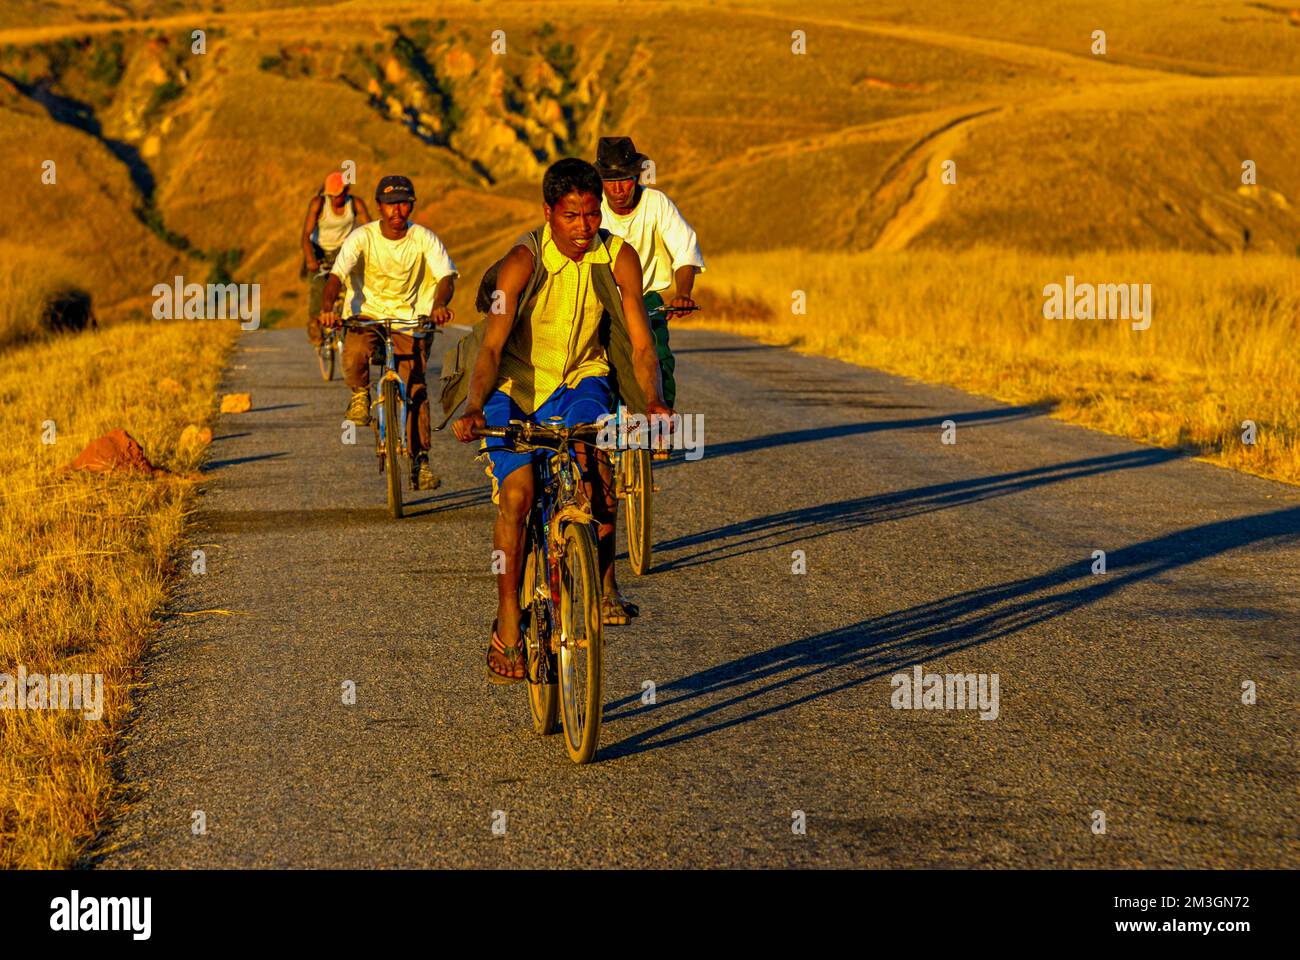 Les habitants de la région se rentrent à vélo au coucher du soleil, le long de la route entre Antanarivo et Morondavia, Madagascar, Océan Indien Banque D'Images